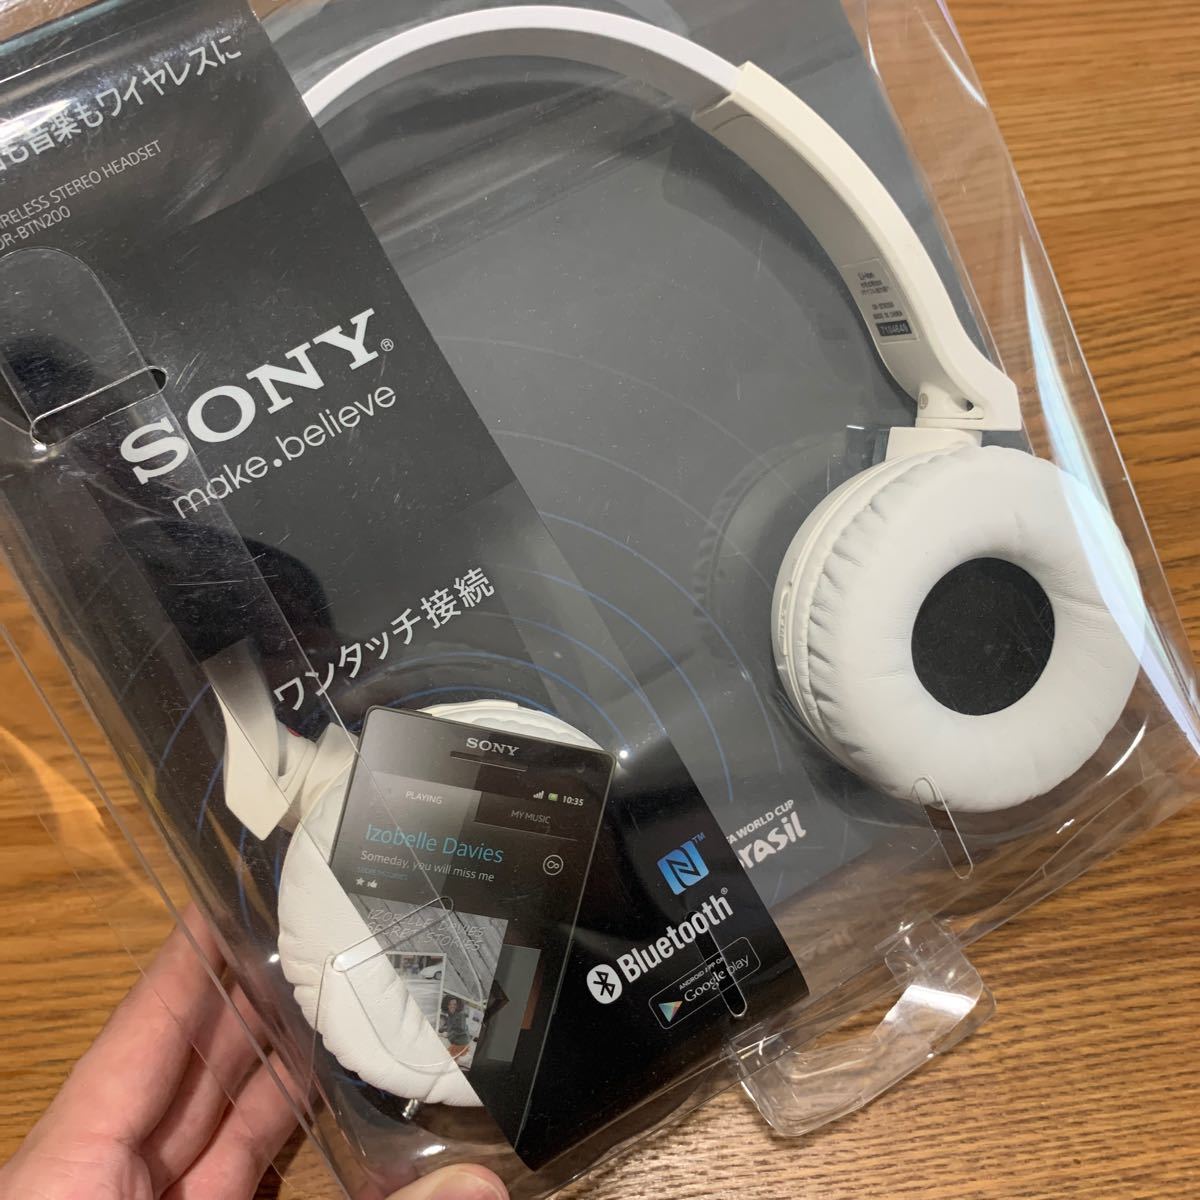 SONY 密閉型ワイヤレスヘッドホン Bluetooth対応 マイク付 ホワイト DR